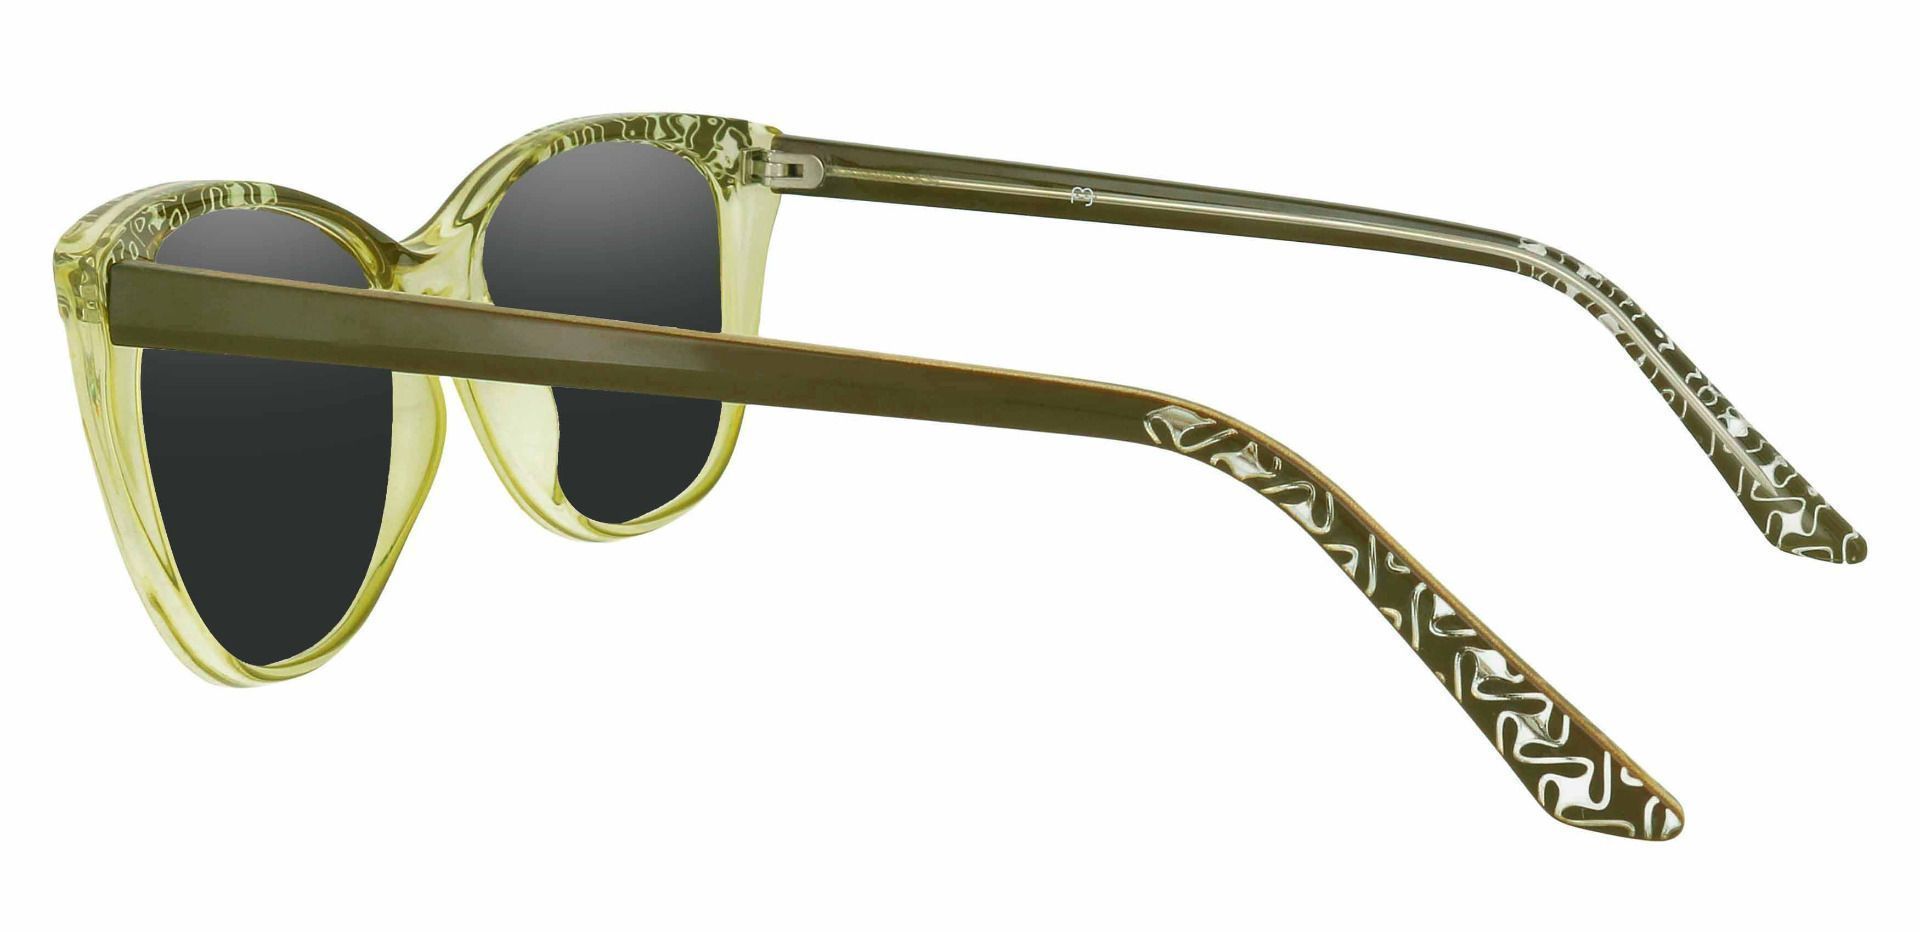 Alberta Cat Eye Prescription Sunglasses - Green Frame With Gray Lenses